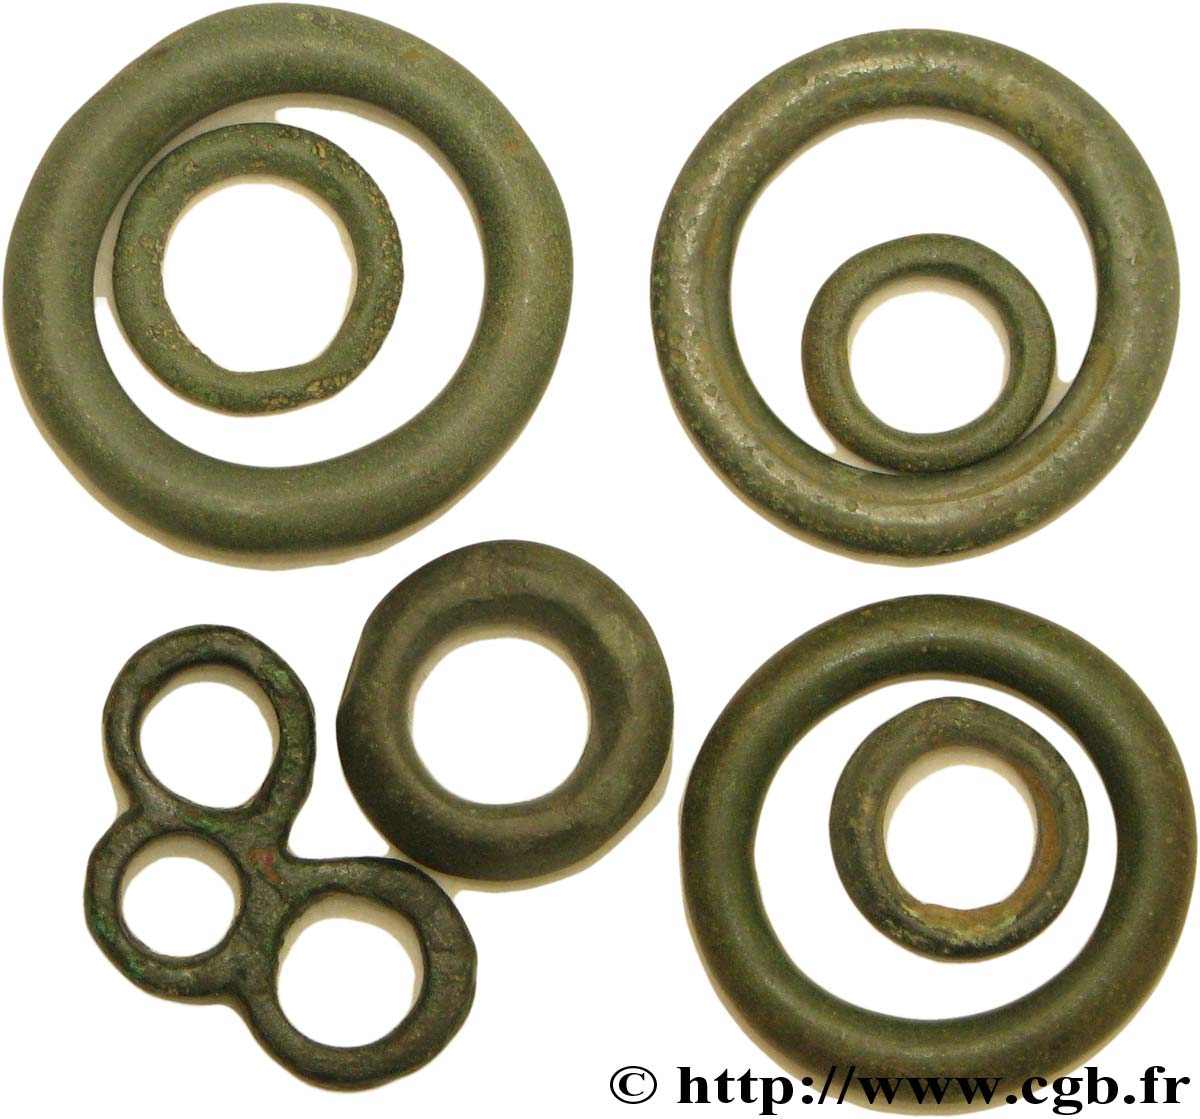  ROUELLE  Lot de 8 rouelles, anneaux ou perles en bronze lotto